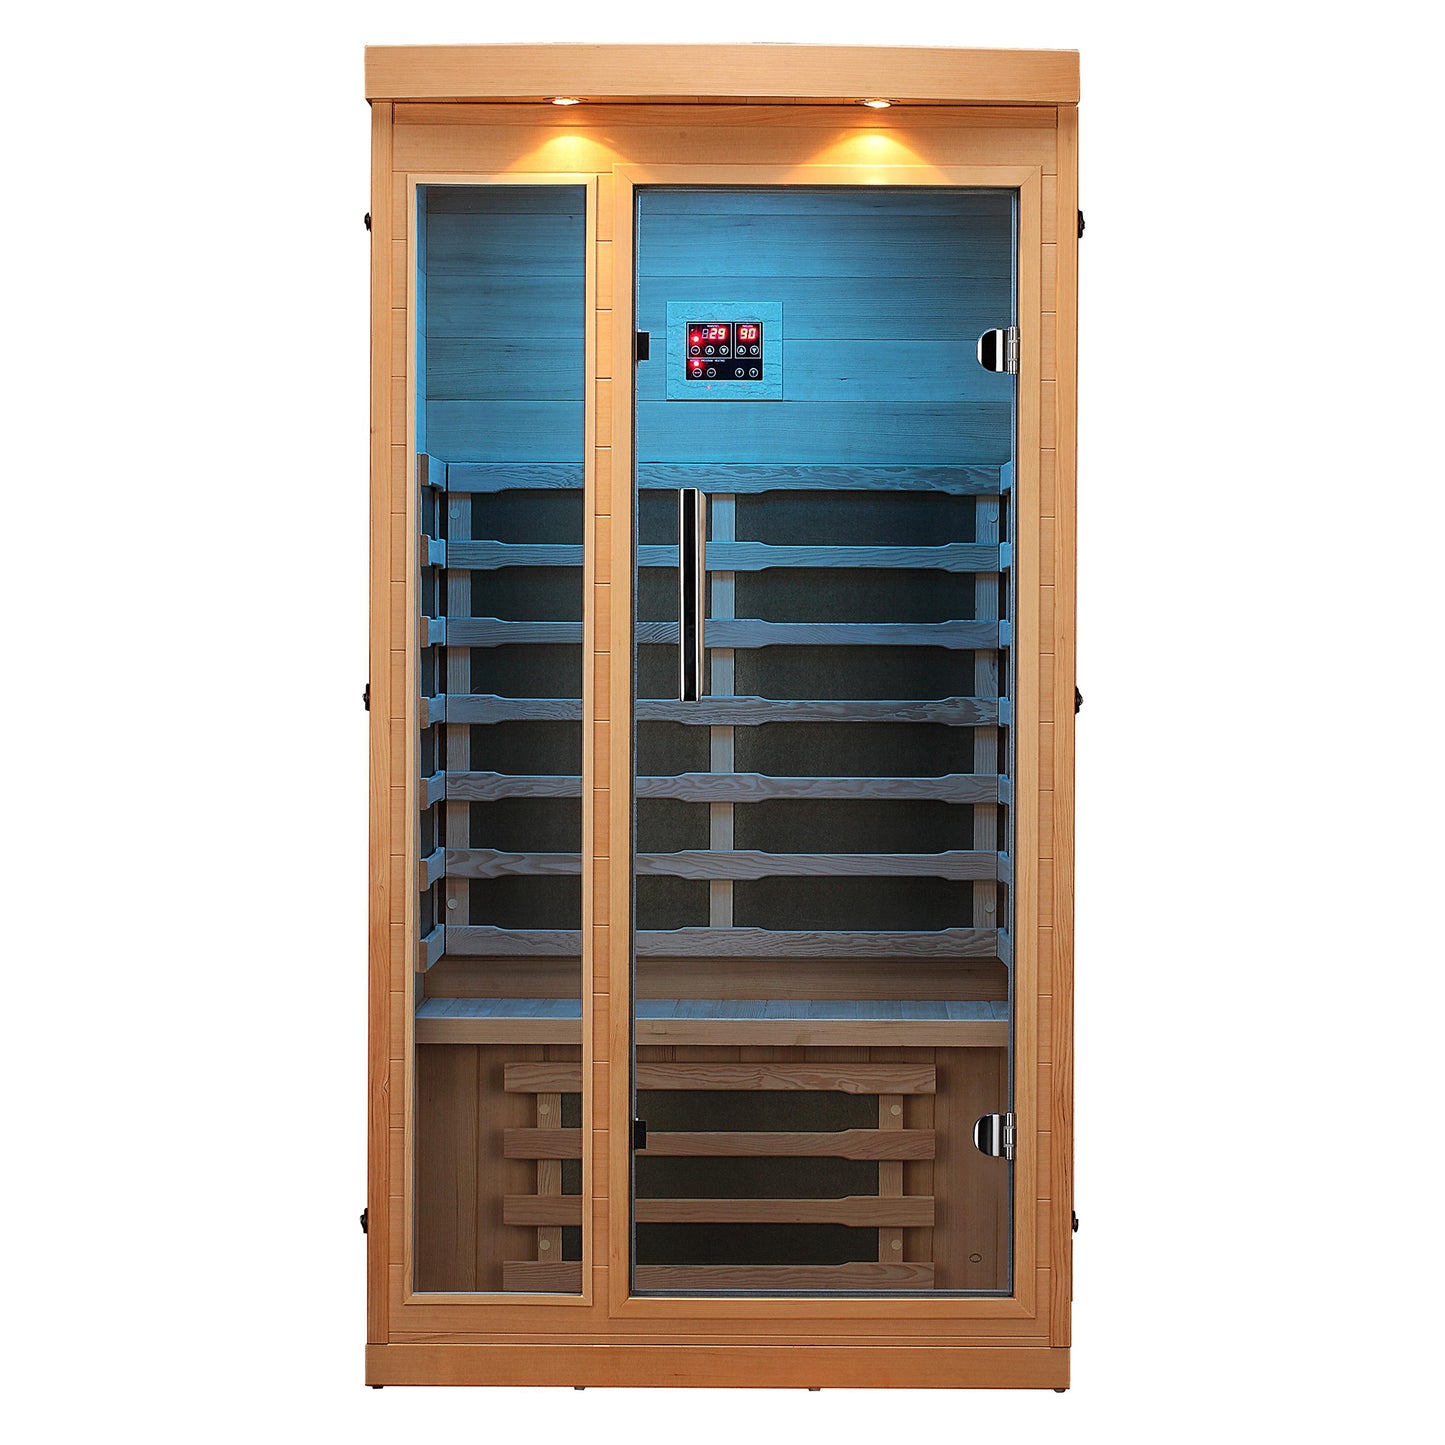 Chilliwack Infrarotkabine  102 x 97 x 191 cm, Infrarotsauna mit Bluetooth-Audio und LED-Beleuchtung, Sauna für Zuhause